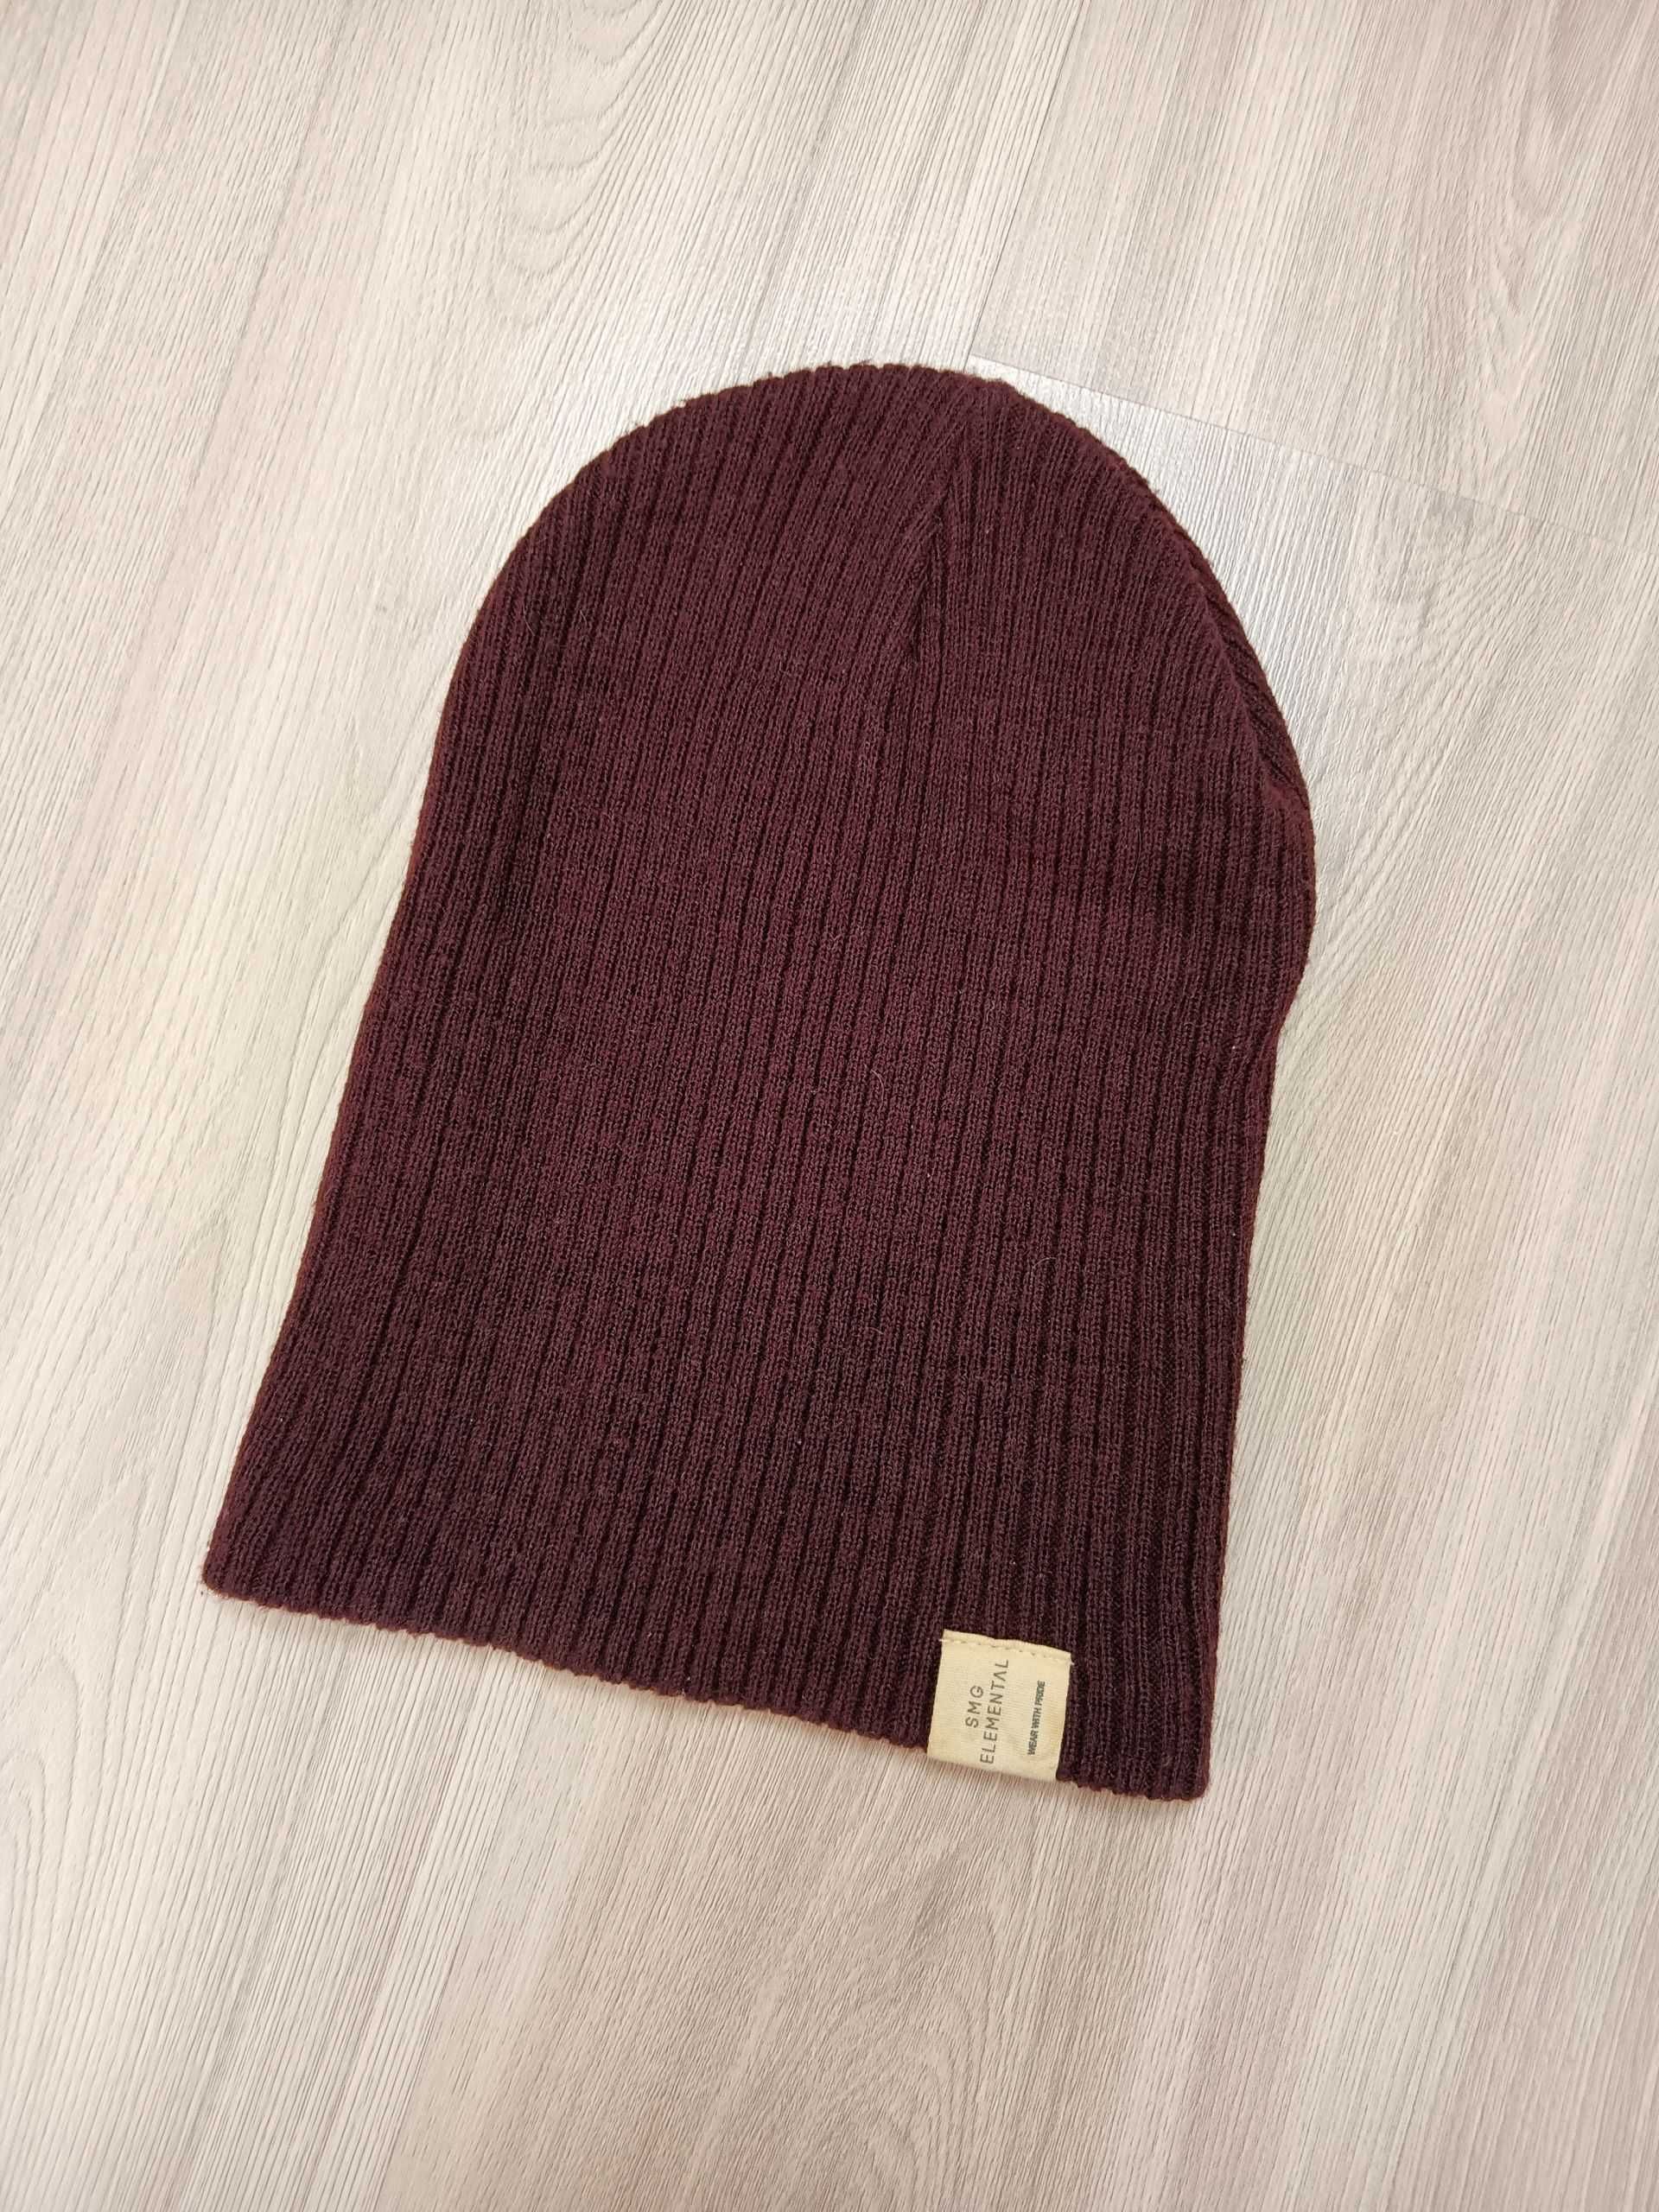 Ciepła bordowa czapka na zimę